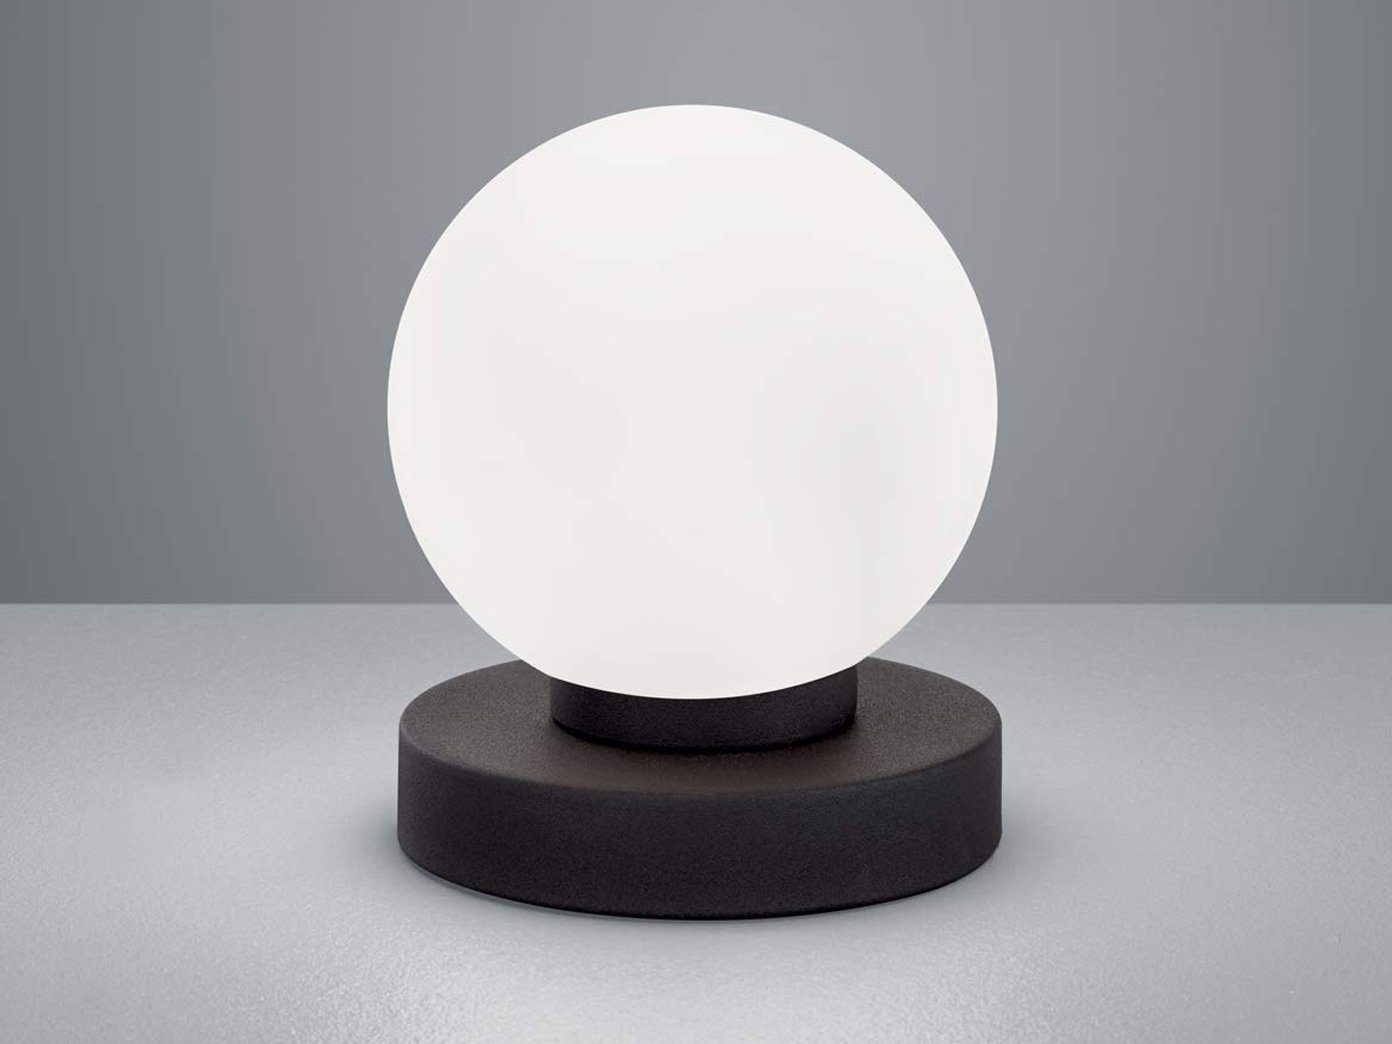 Tischlampe mit Dimmer Glas weiß Lampe Wohnzimmer Nachttisch Touchdimmer 